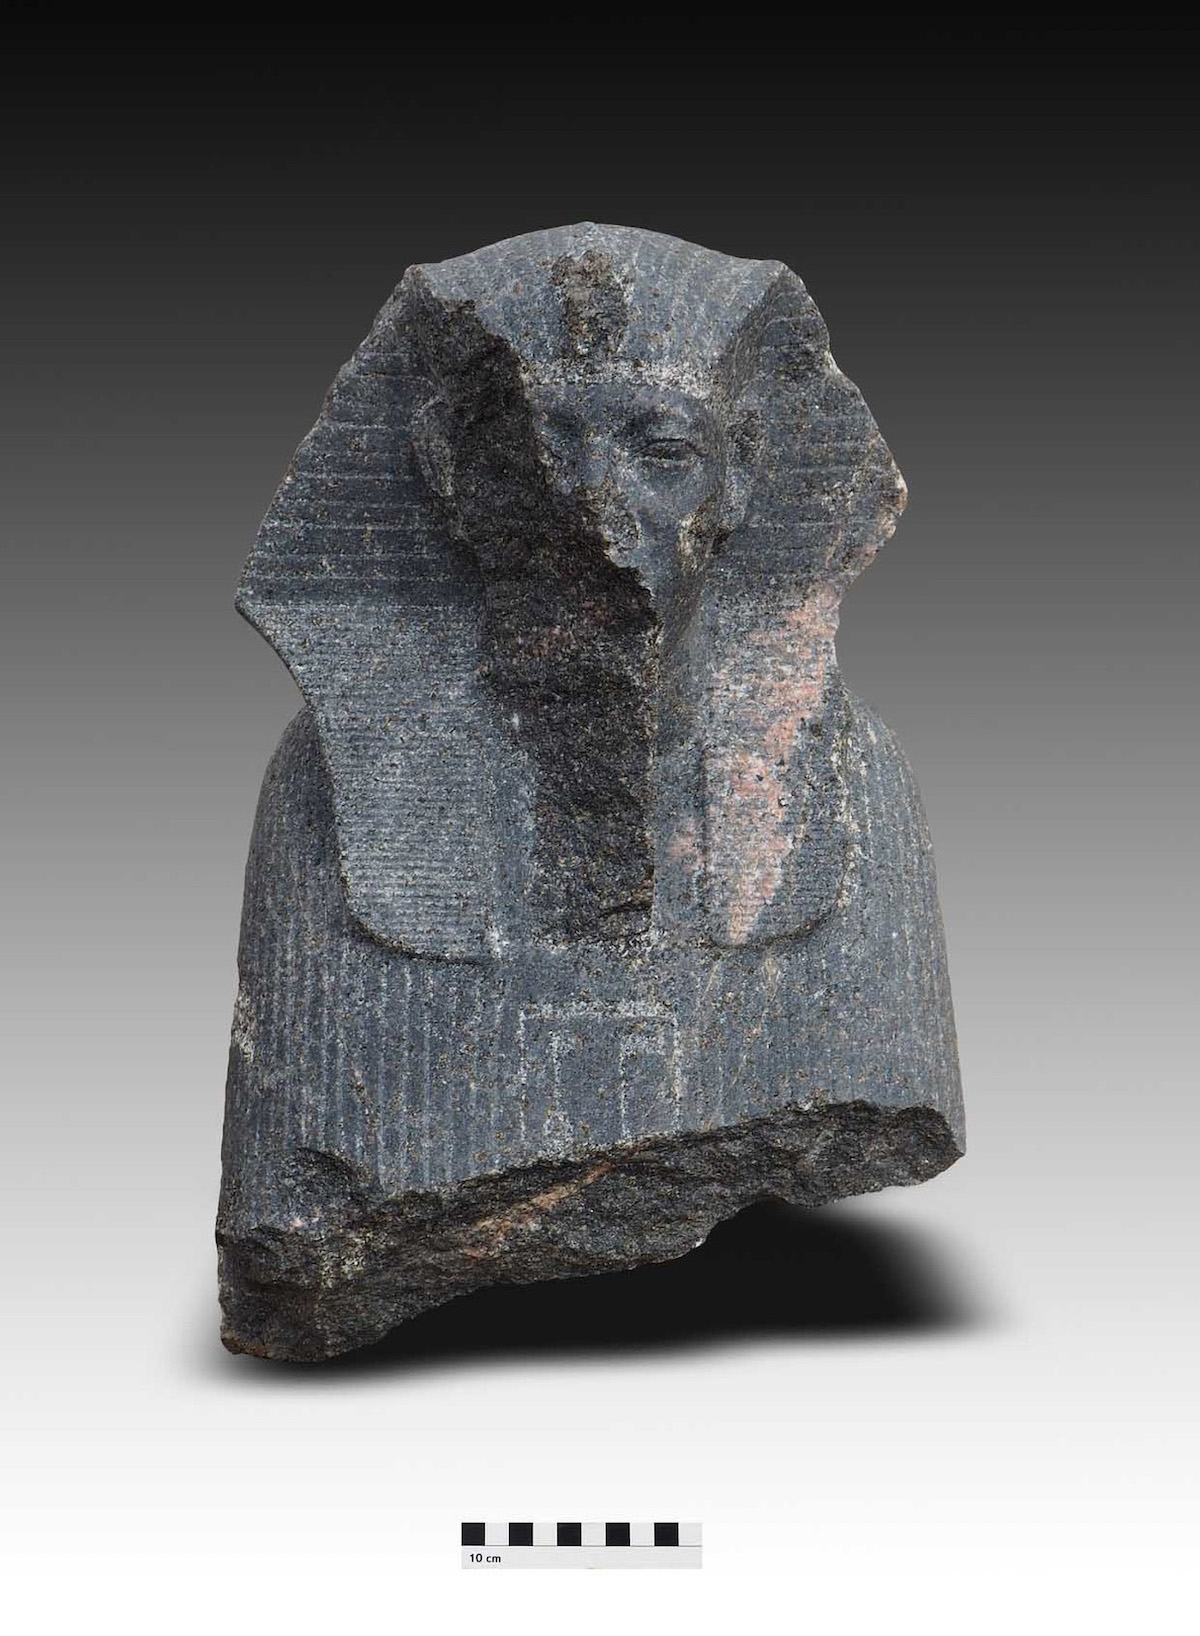 ملاذ مصري قديم ، تم العثور على أجزاء من تمثال في المدينة التي تضم إبرة كليوباترا